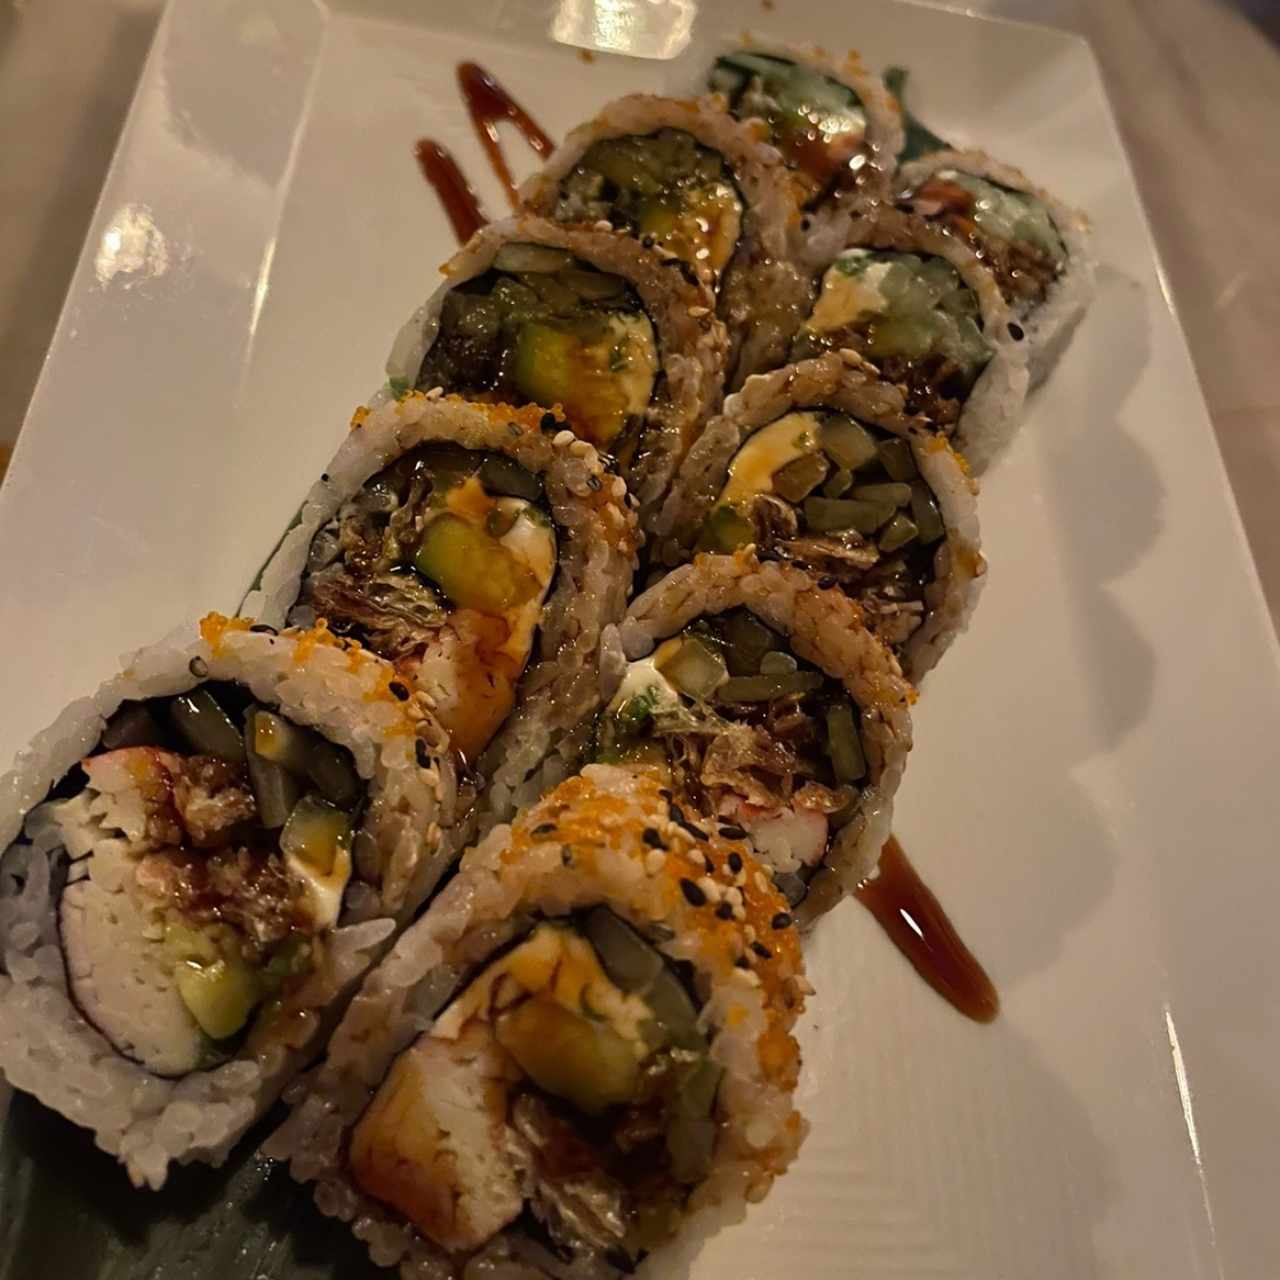 Sushi Rolls - Latino California